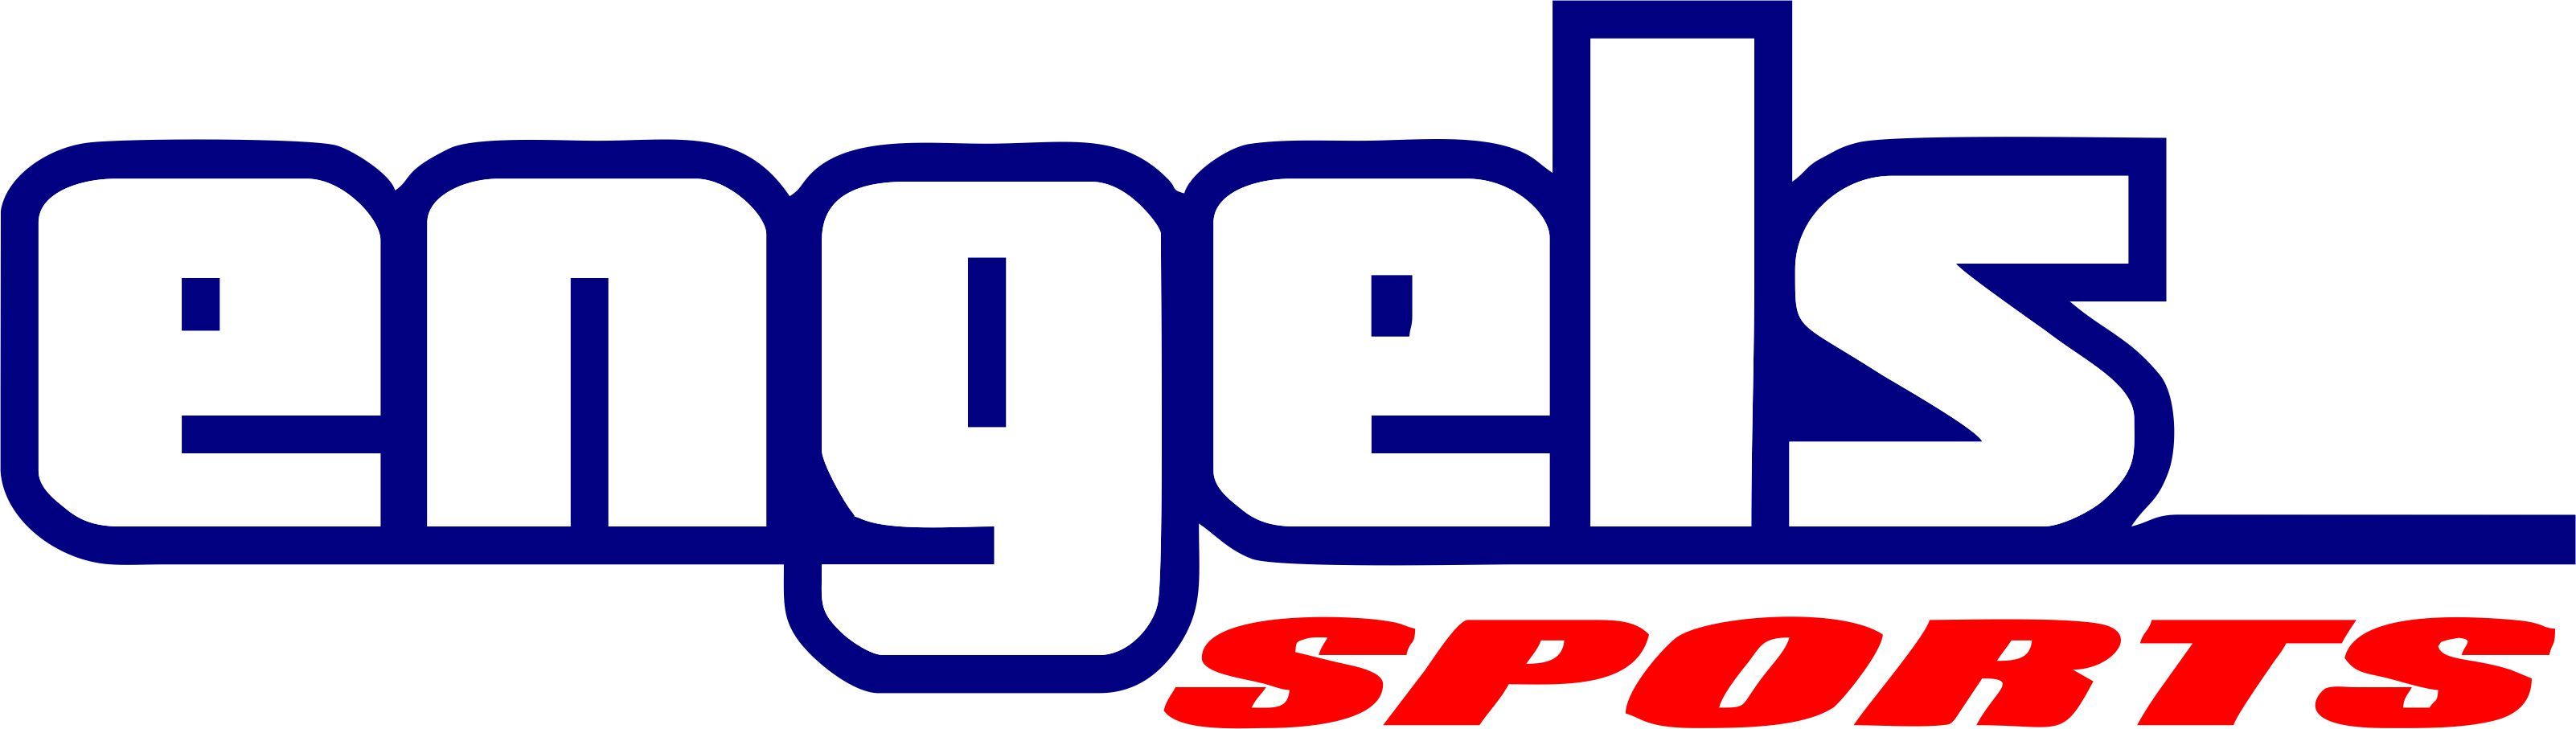 tgh Logo 2